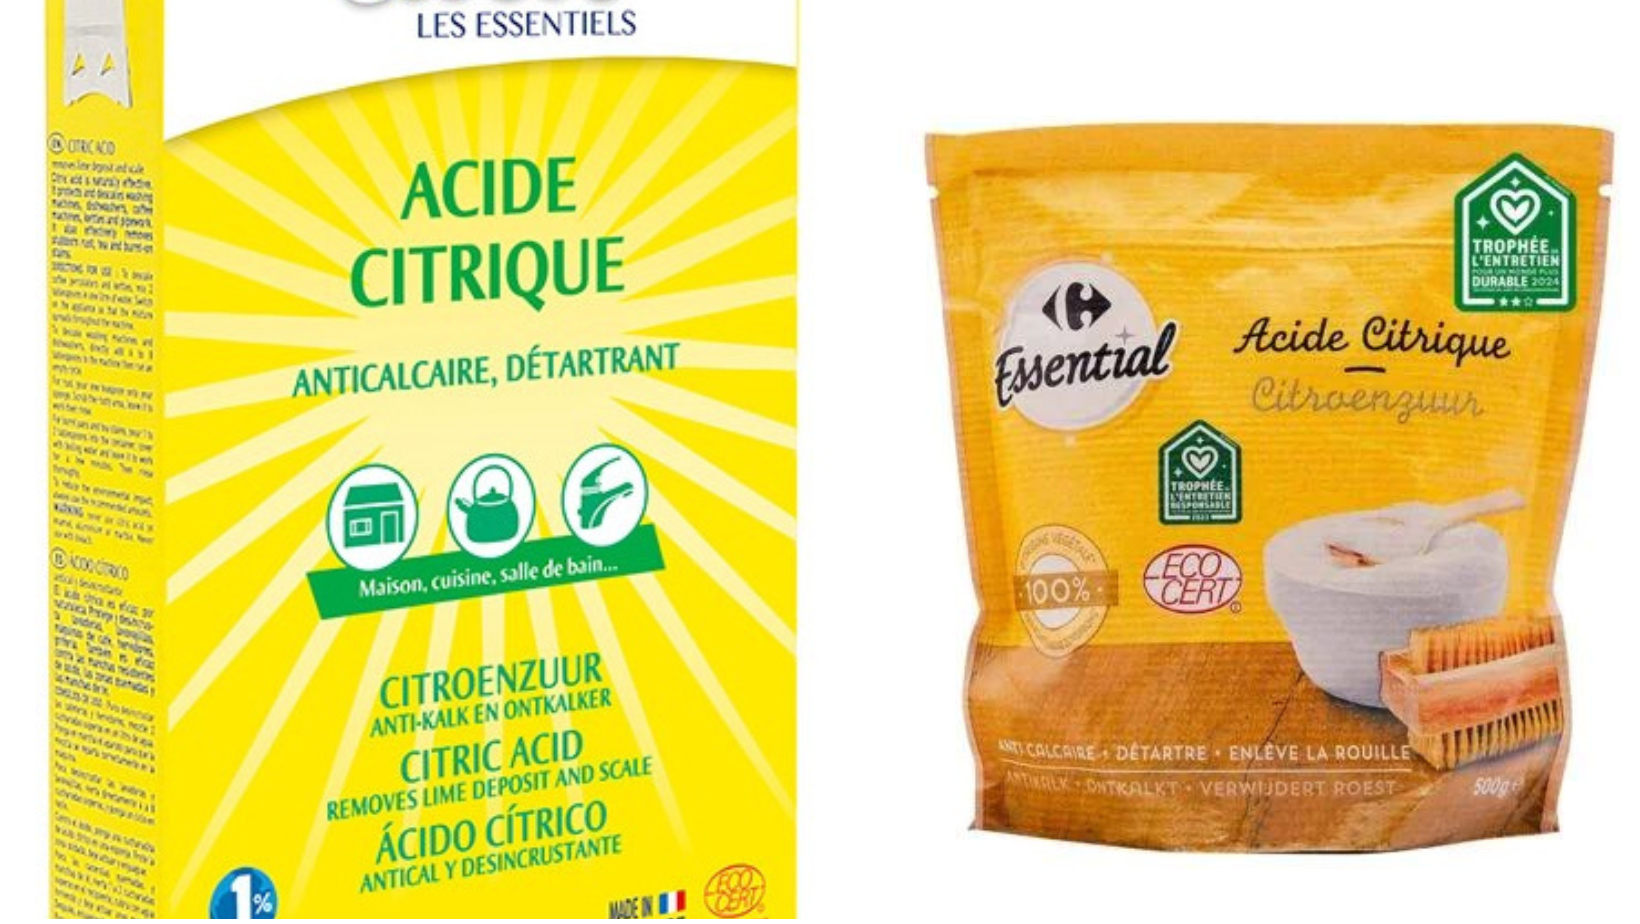 Acide Citrique Carrefour : Guide complet d'utilisation, promotions et astuces d'entretien